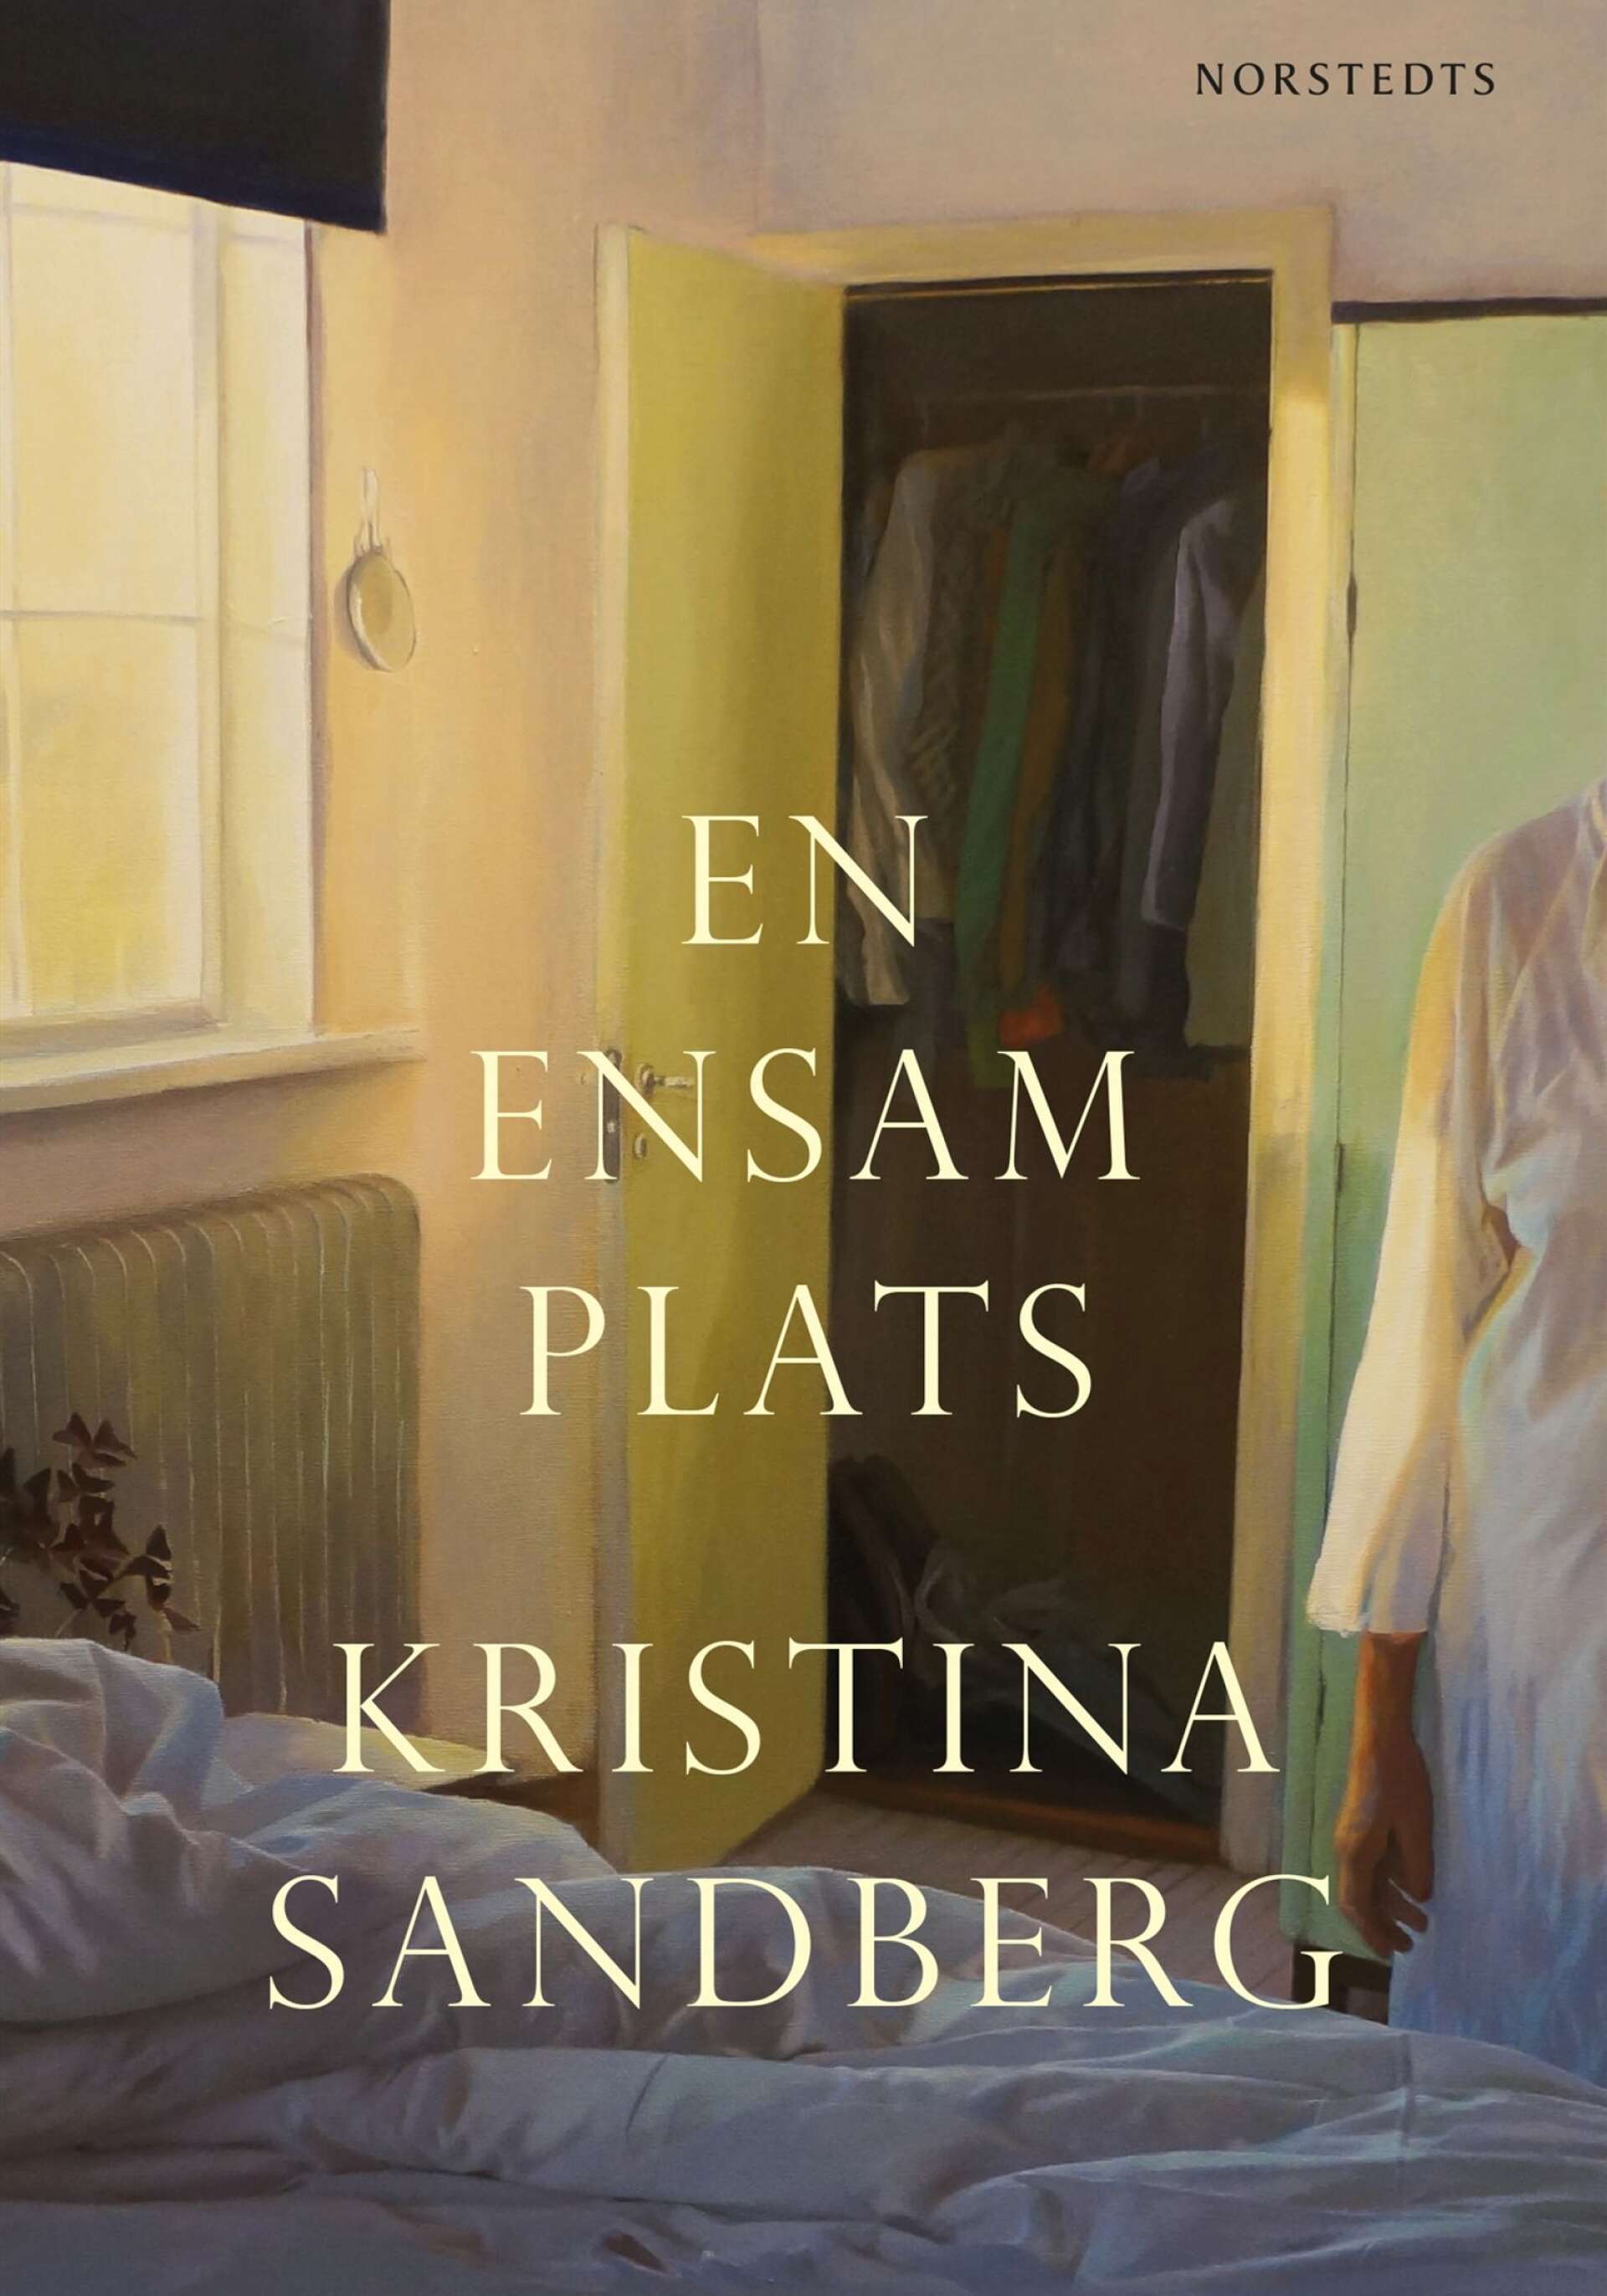 En ensam plats av Kristina Sandberg (Norstedts).